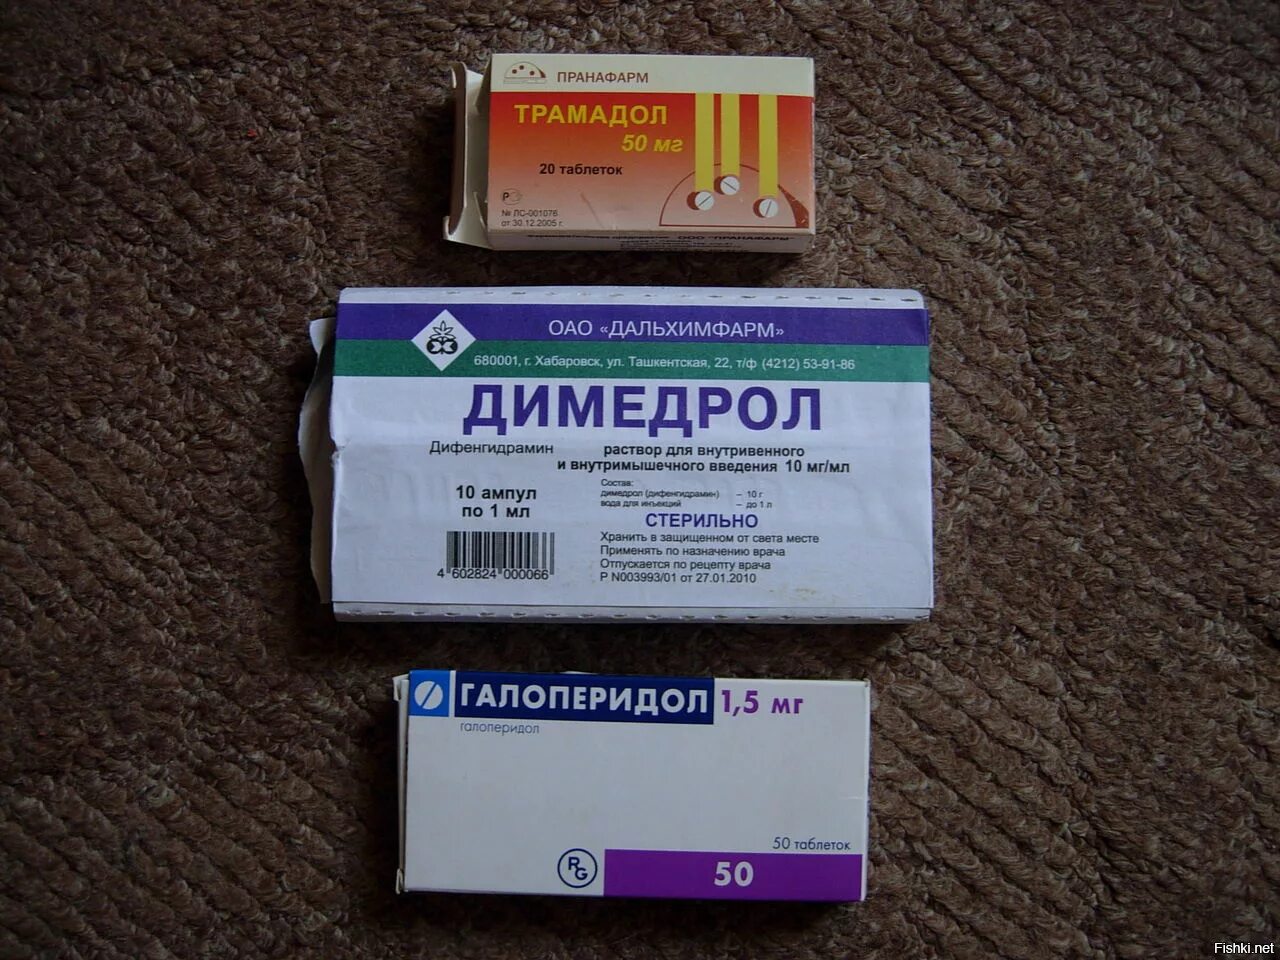 Снотворные препараты в ампулах. Димедрол в ампулах таблетки. Советские обезболивающие таблетки.